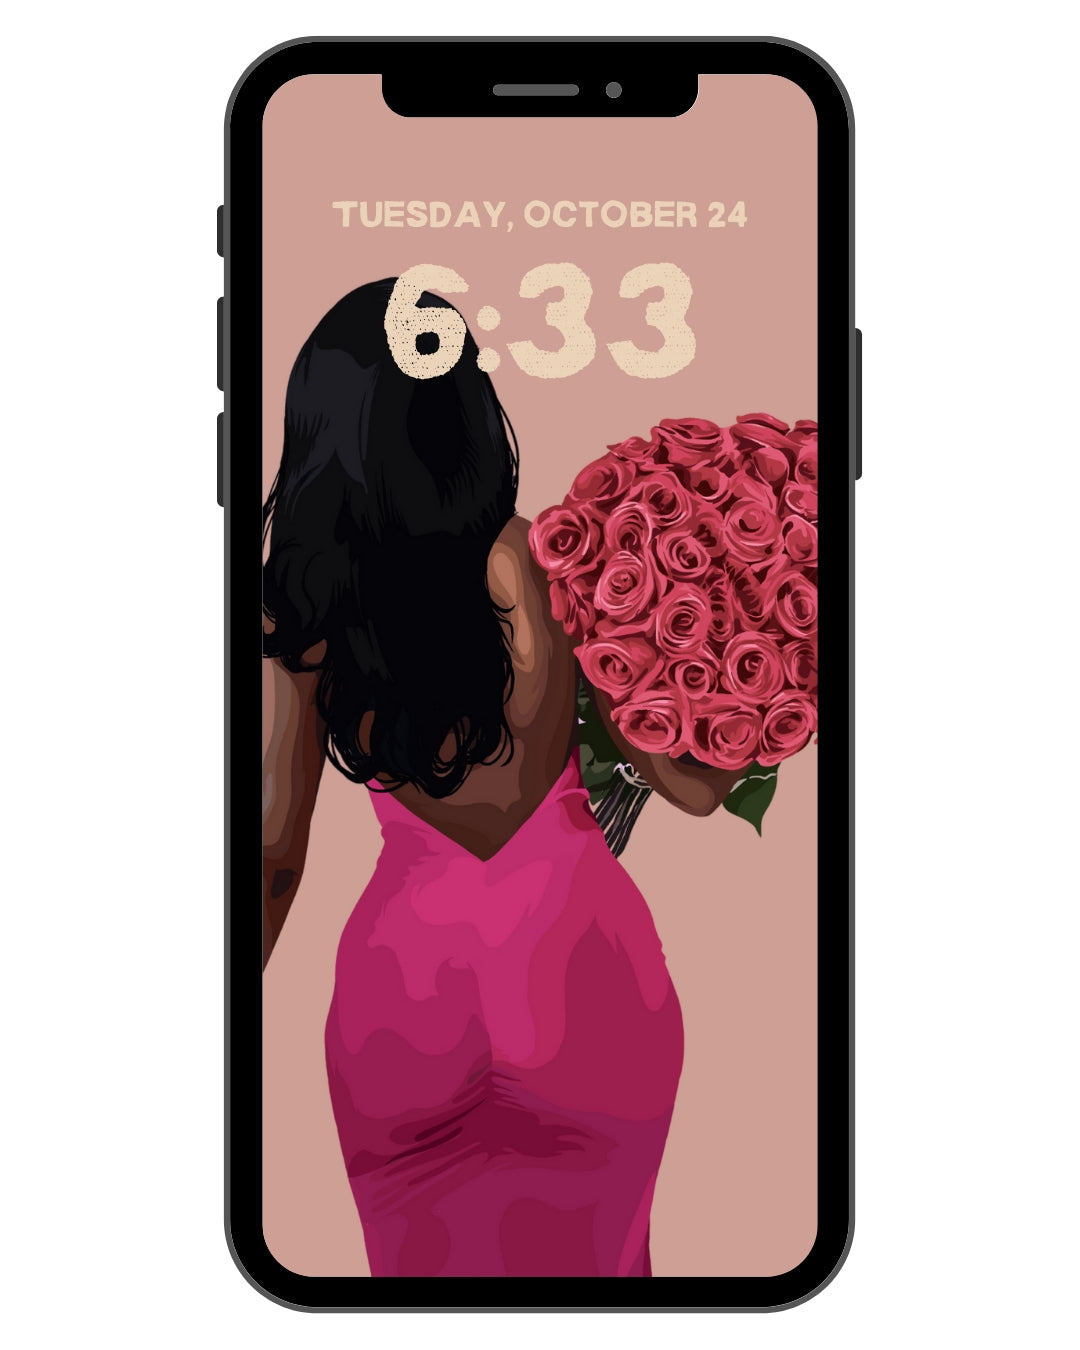 Bloom - Phone Screensaver